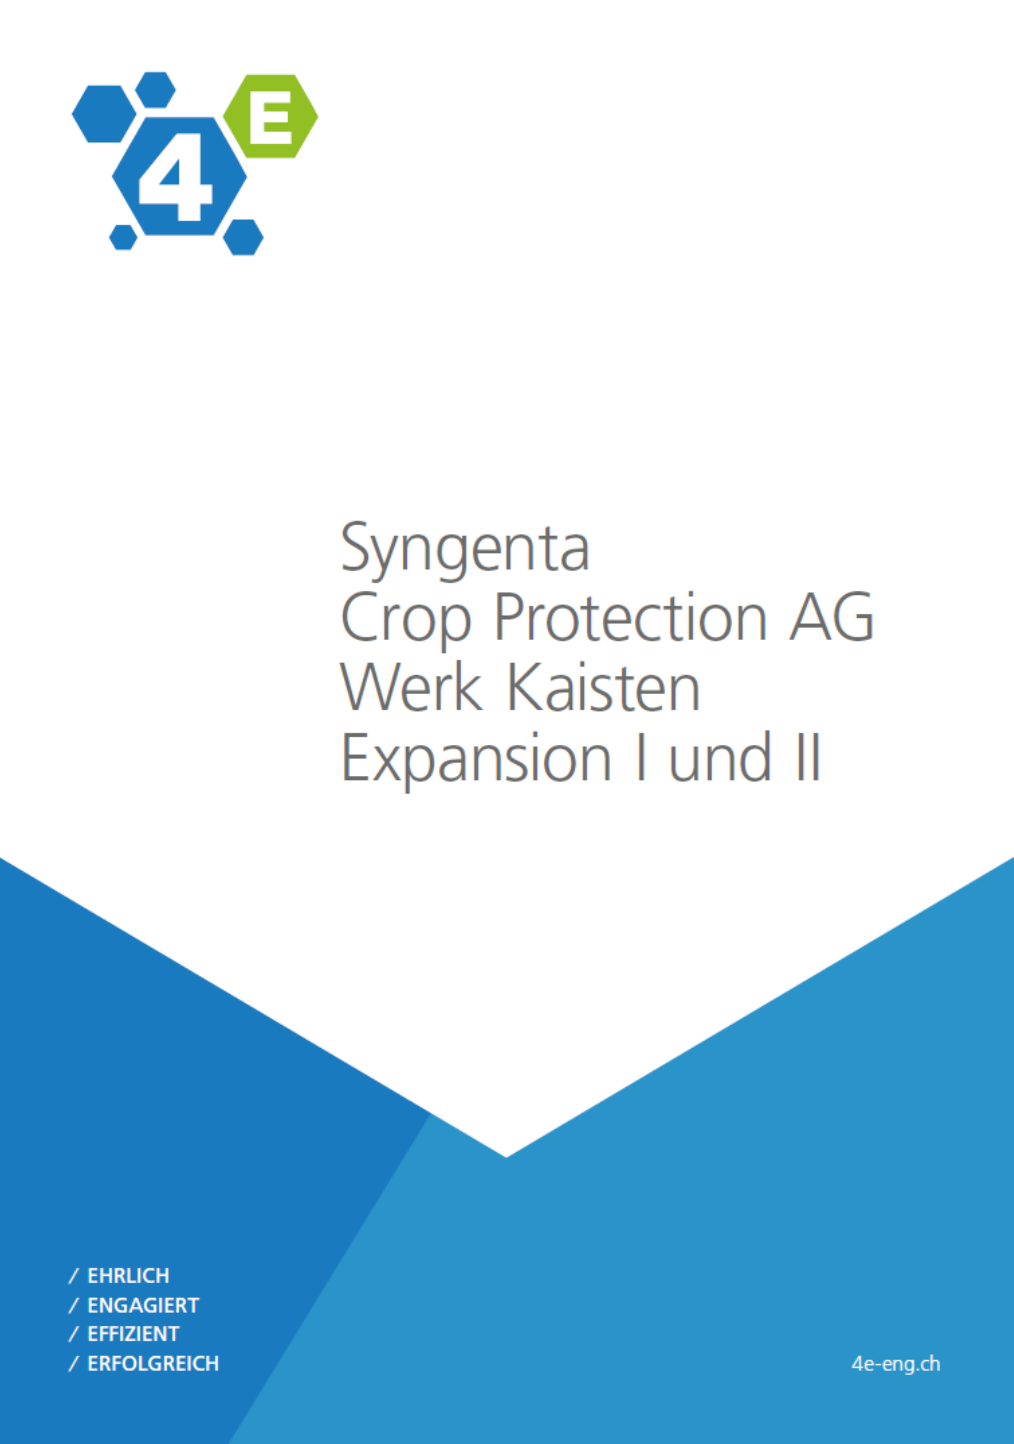 Factsheet: Syngenta Crop Protection AG, Werk Kaisten - Expansion I und II